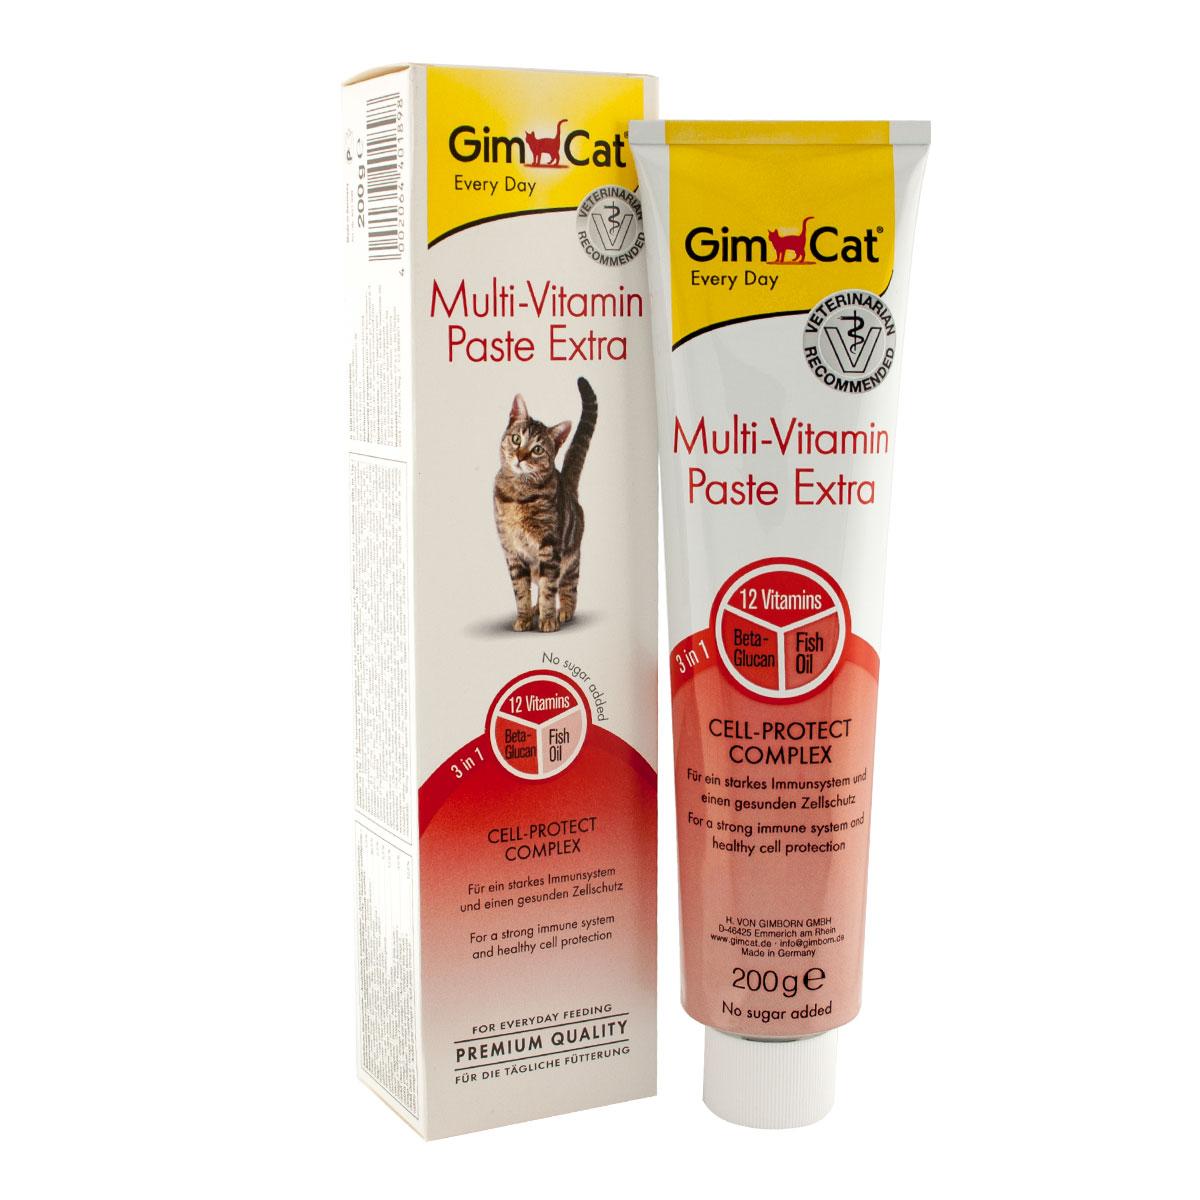 Gimсat Multi-Vitamin Paste Extra мультивітамінна паста для кішок, 50 г